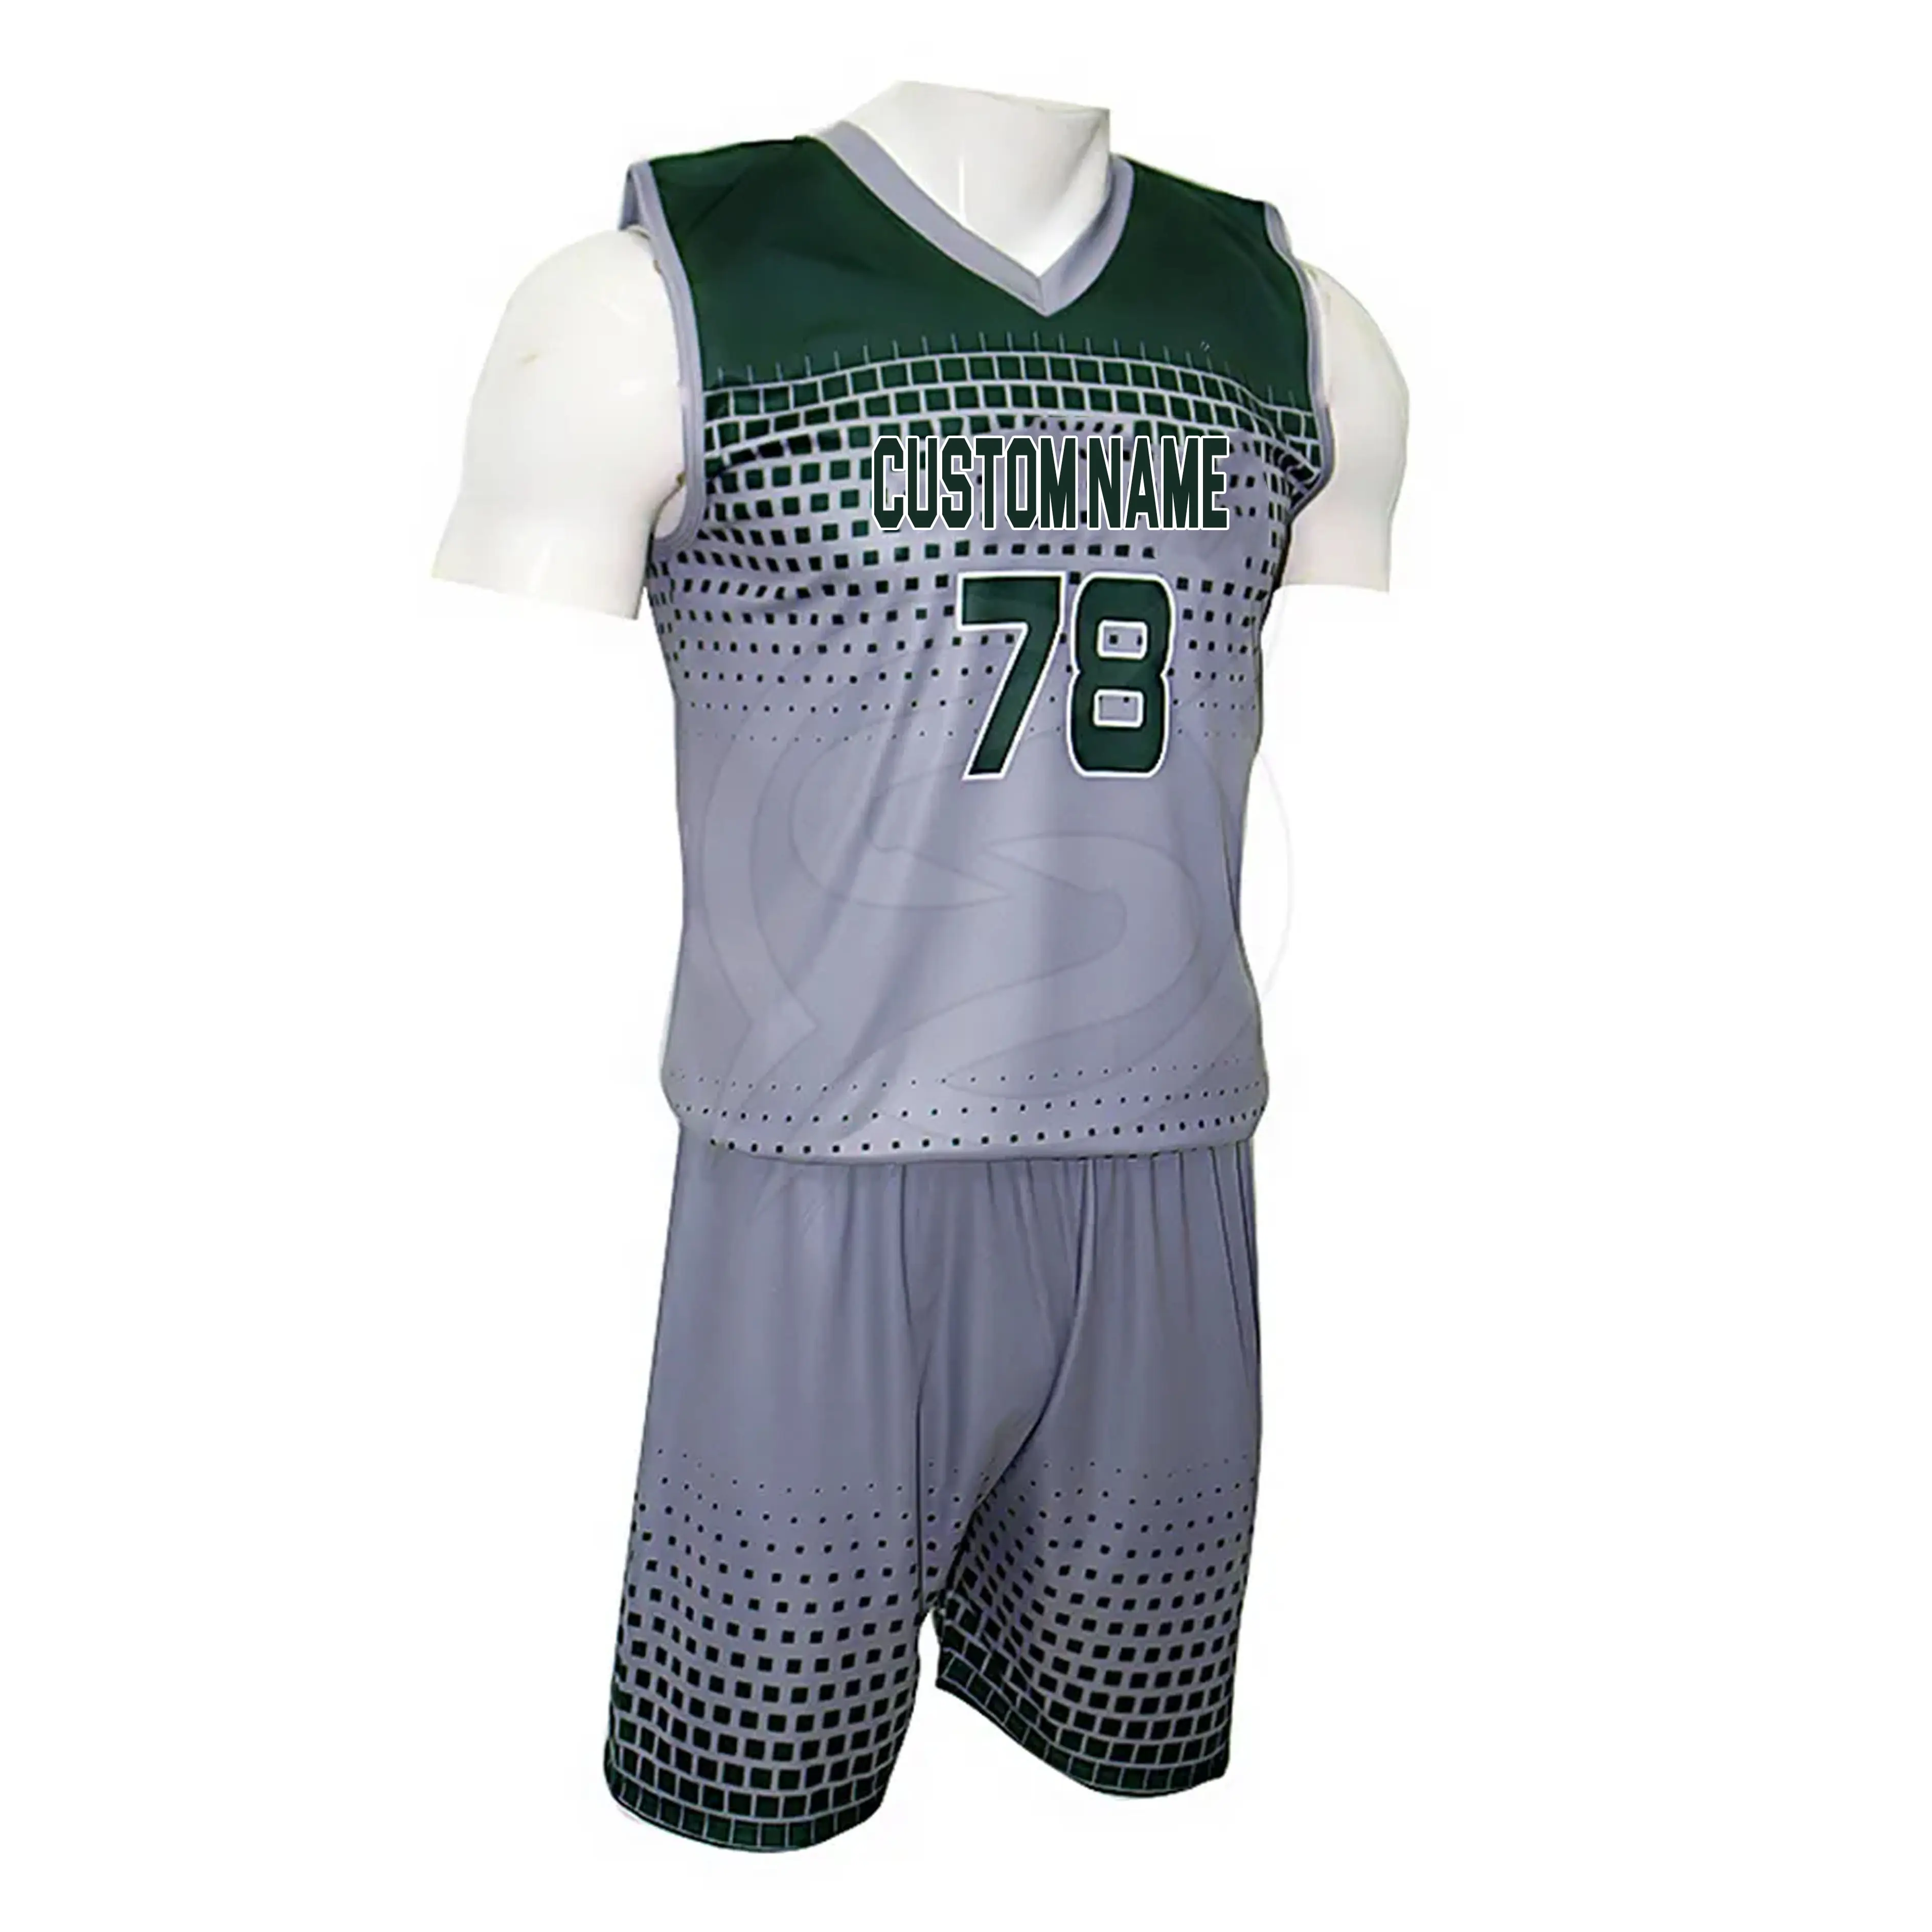 Logotipo personalizado voleibol lleva jersey de voleibol y color corto gris absorbe el sudor Hombre Ropa Deportiva uniforme de voleibol